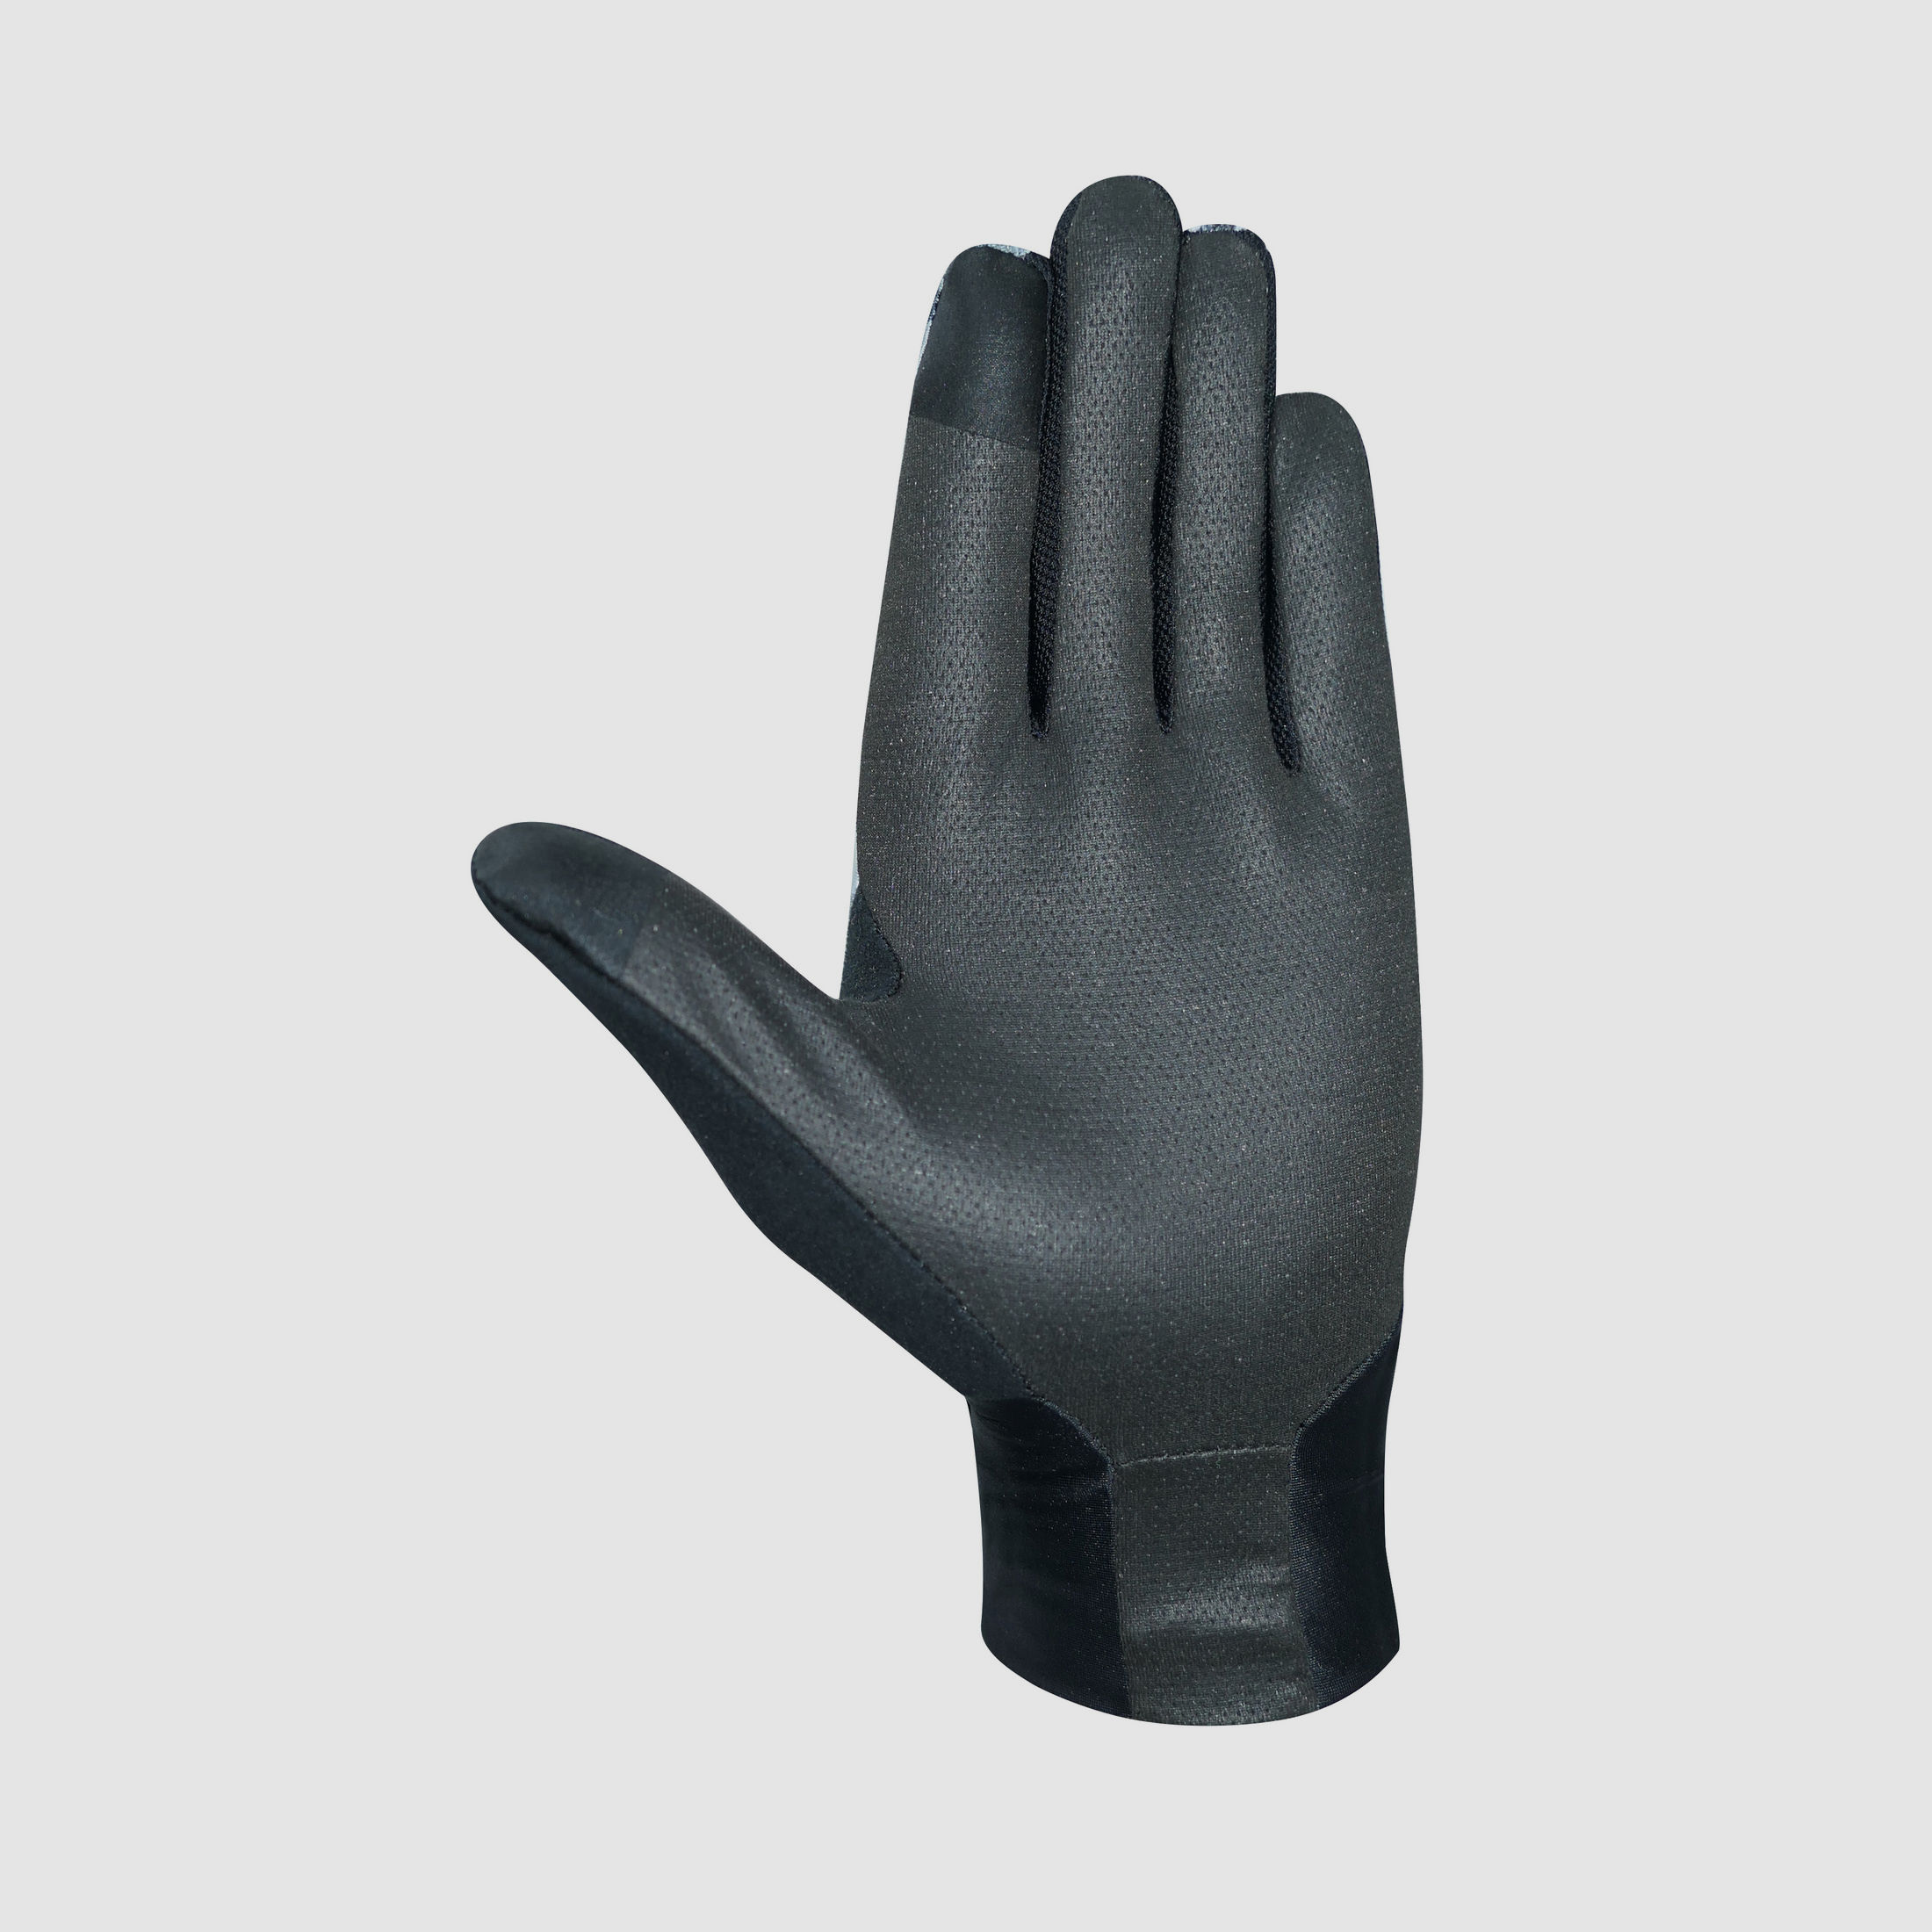 Anschütz Multifunktions Handschuh